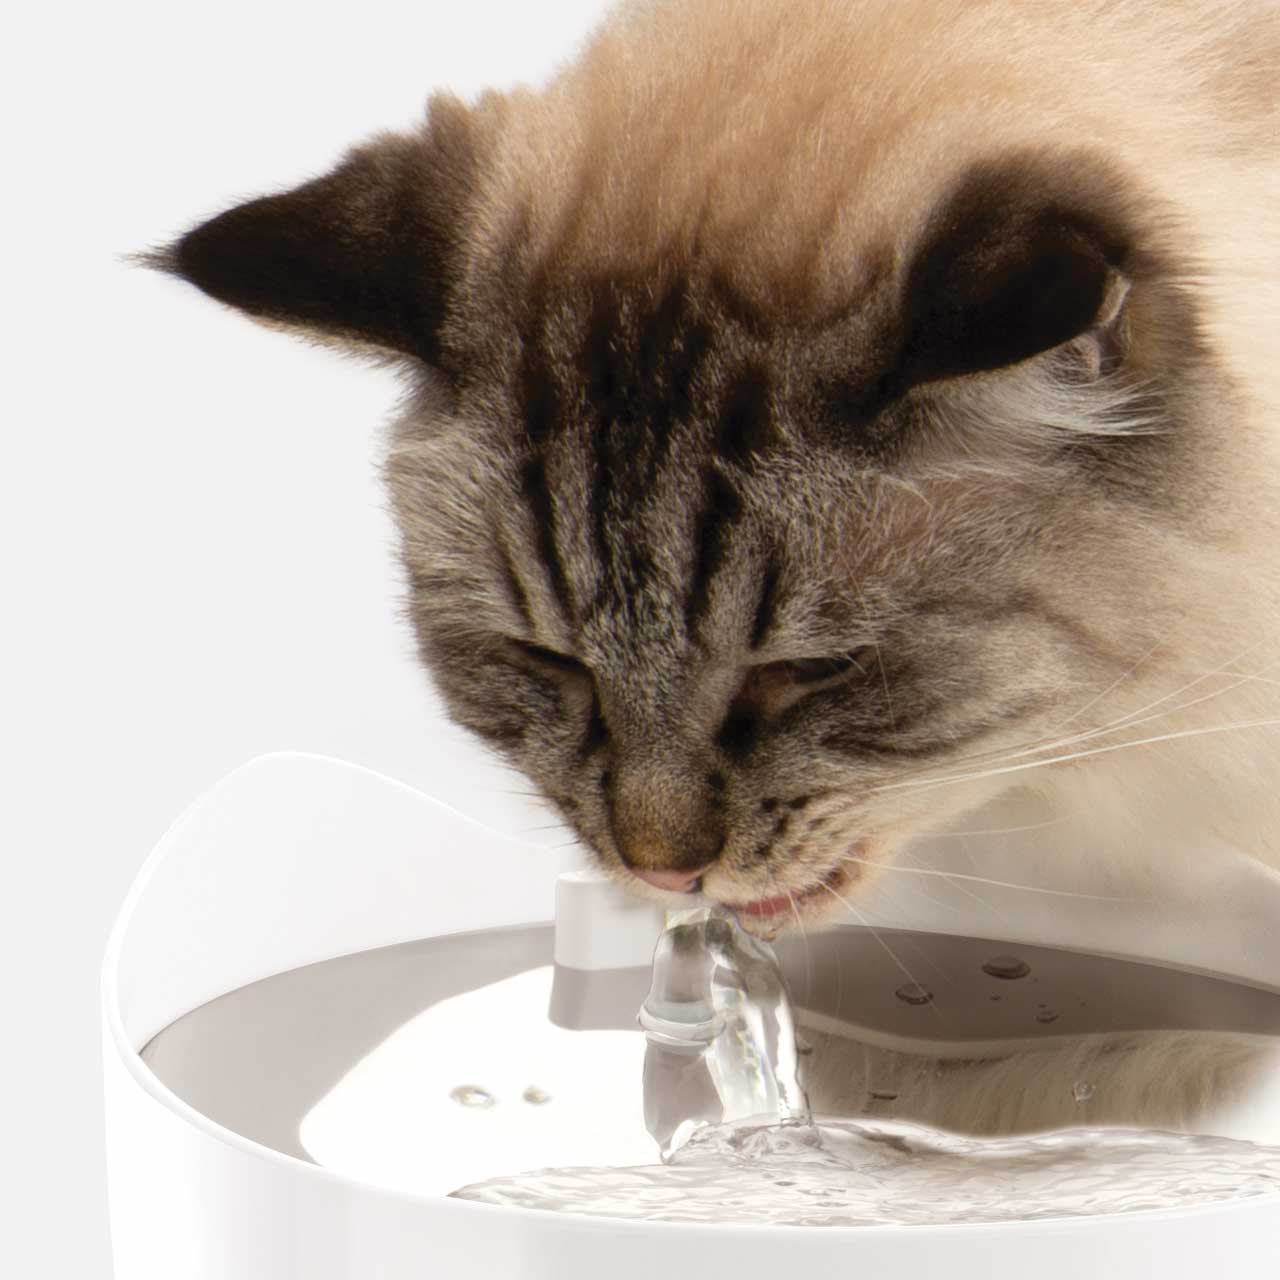 Kat drinkt uit PIXI Smart fontein in comfortabele positie